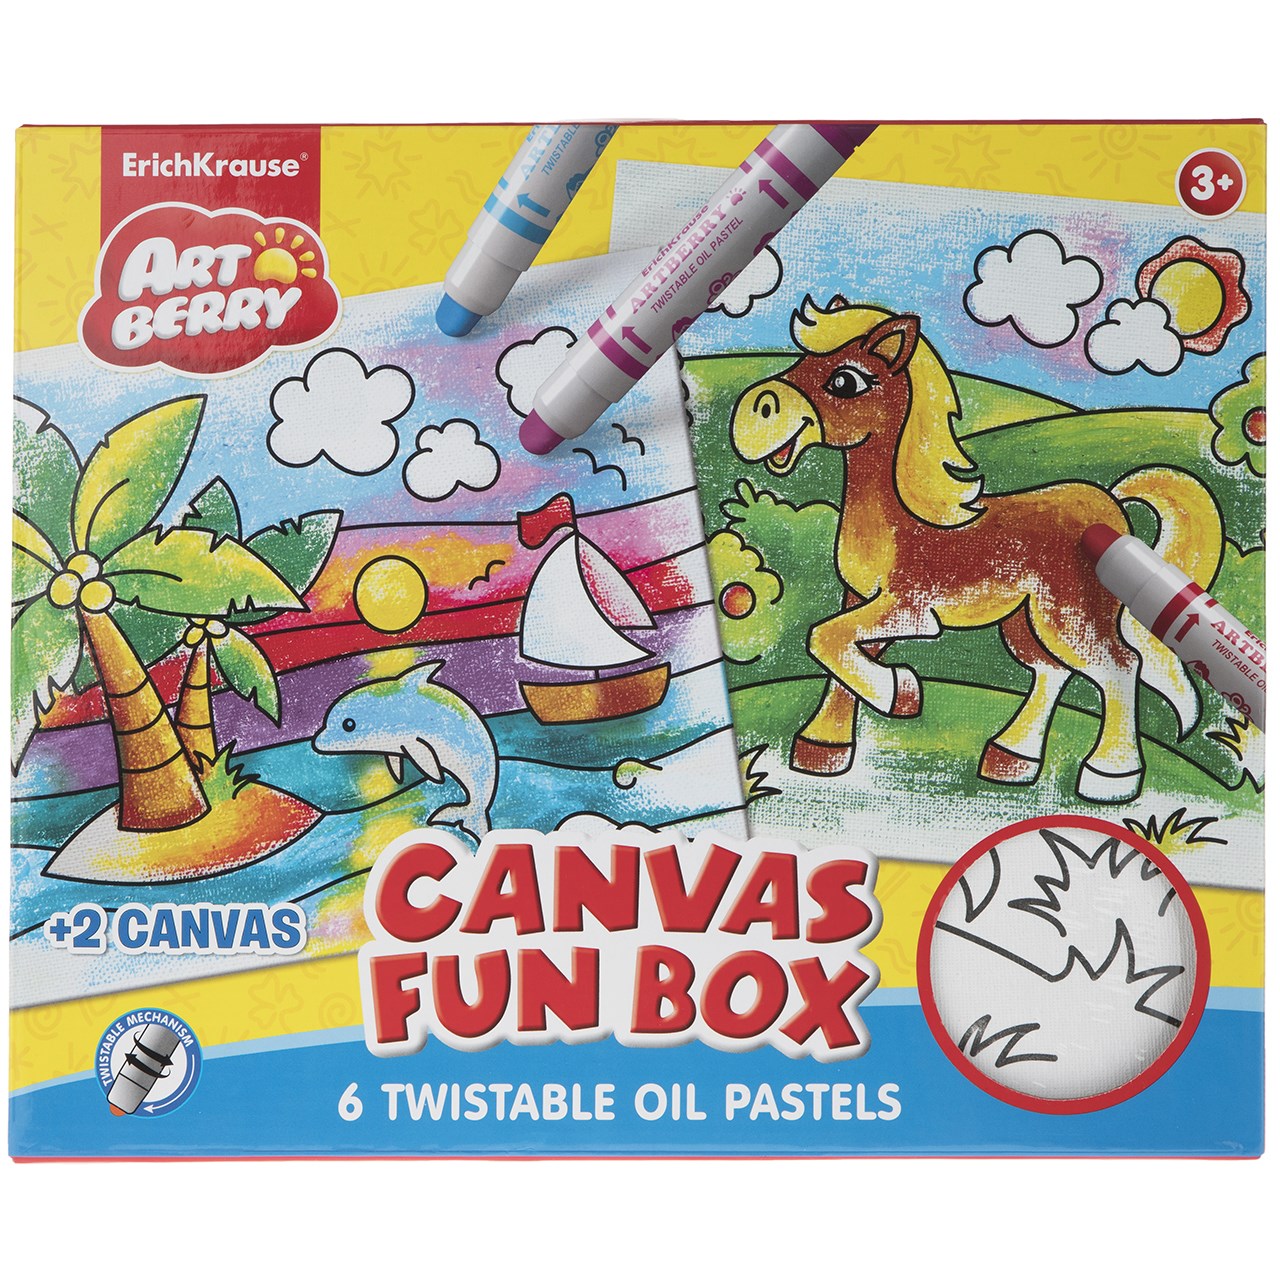 نقد و بررسی بسته رنگ آمیزی اریک کراوزه مدل Canvas Fun Box توسط خریداران